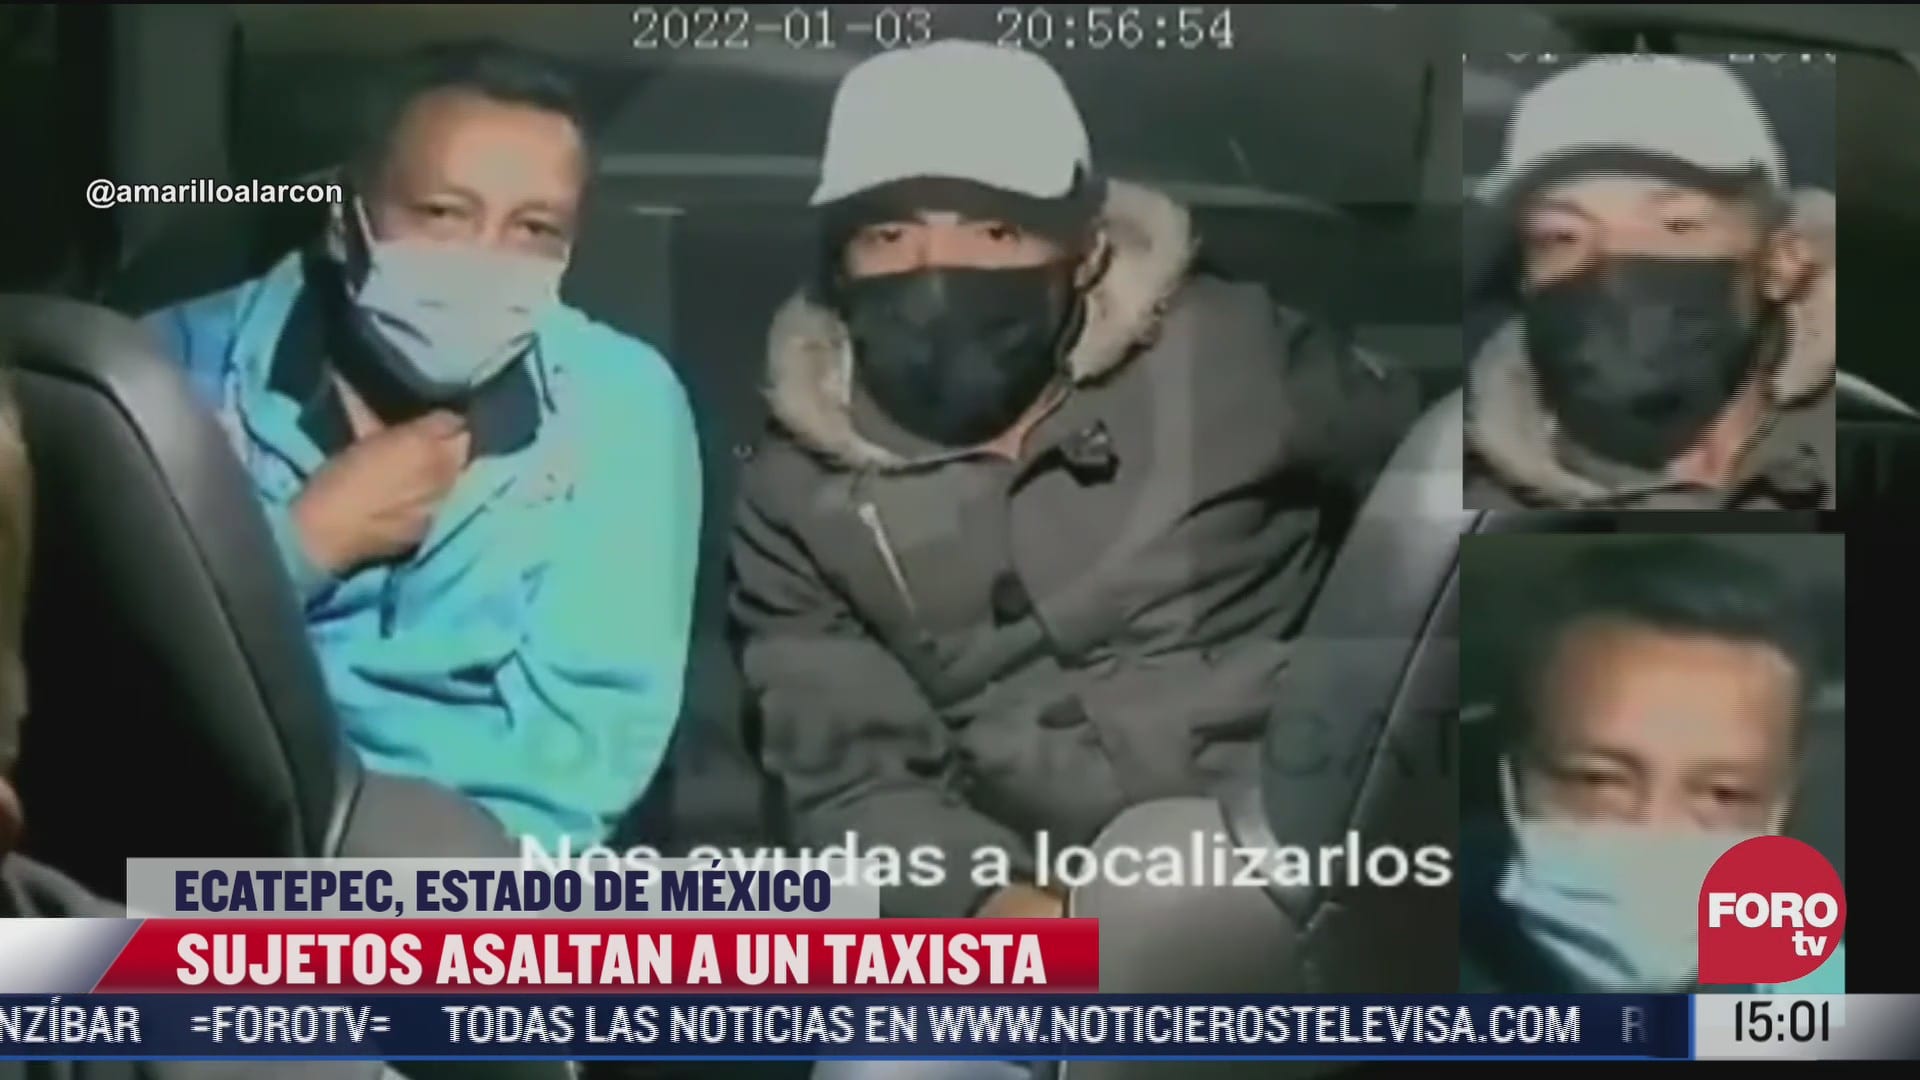 captan asalto a taxista por aplicacion en ecatepec